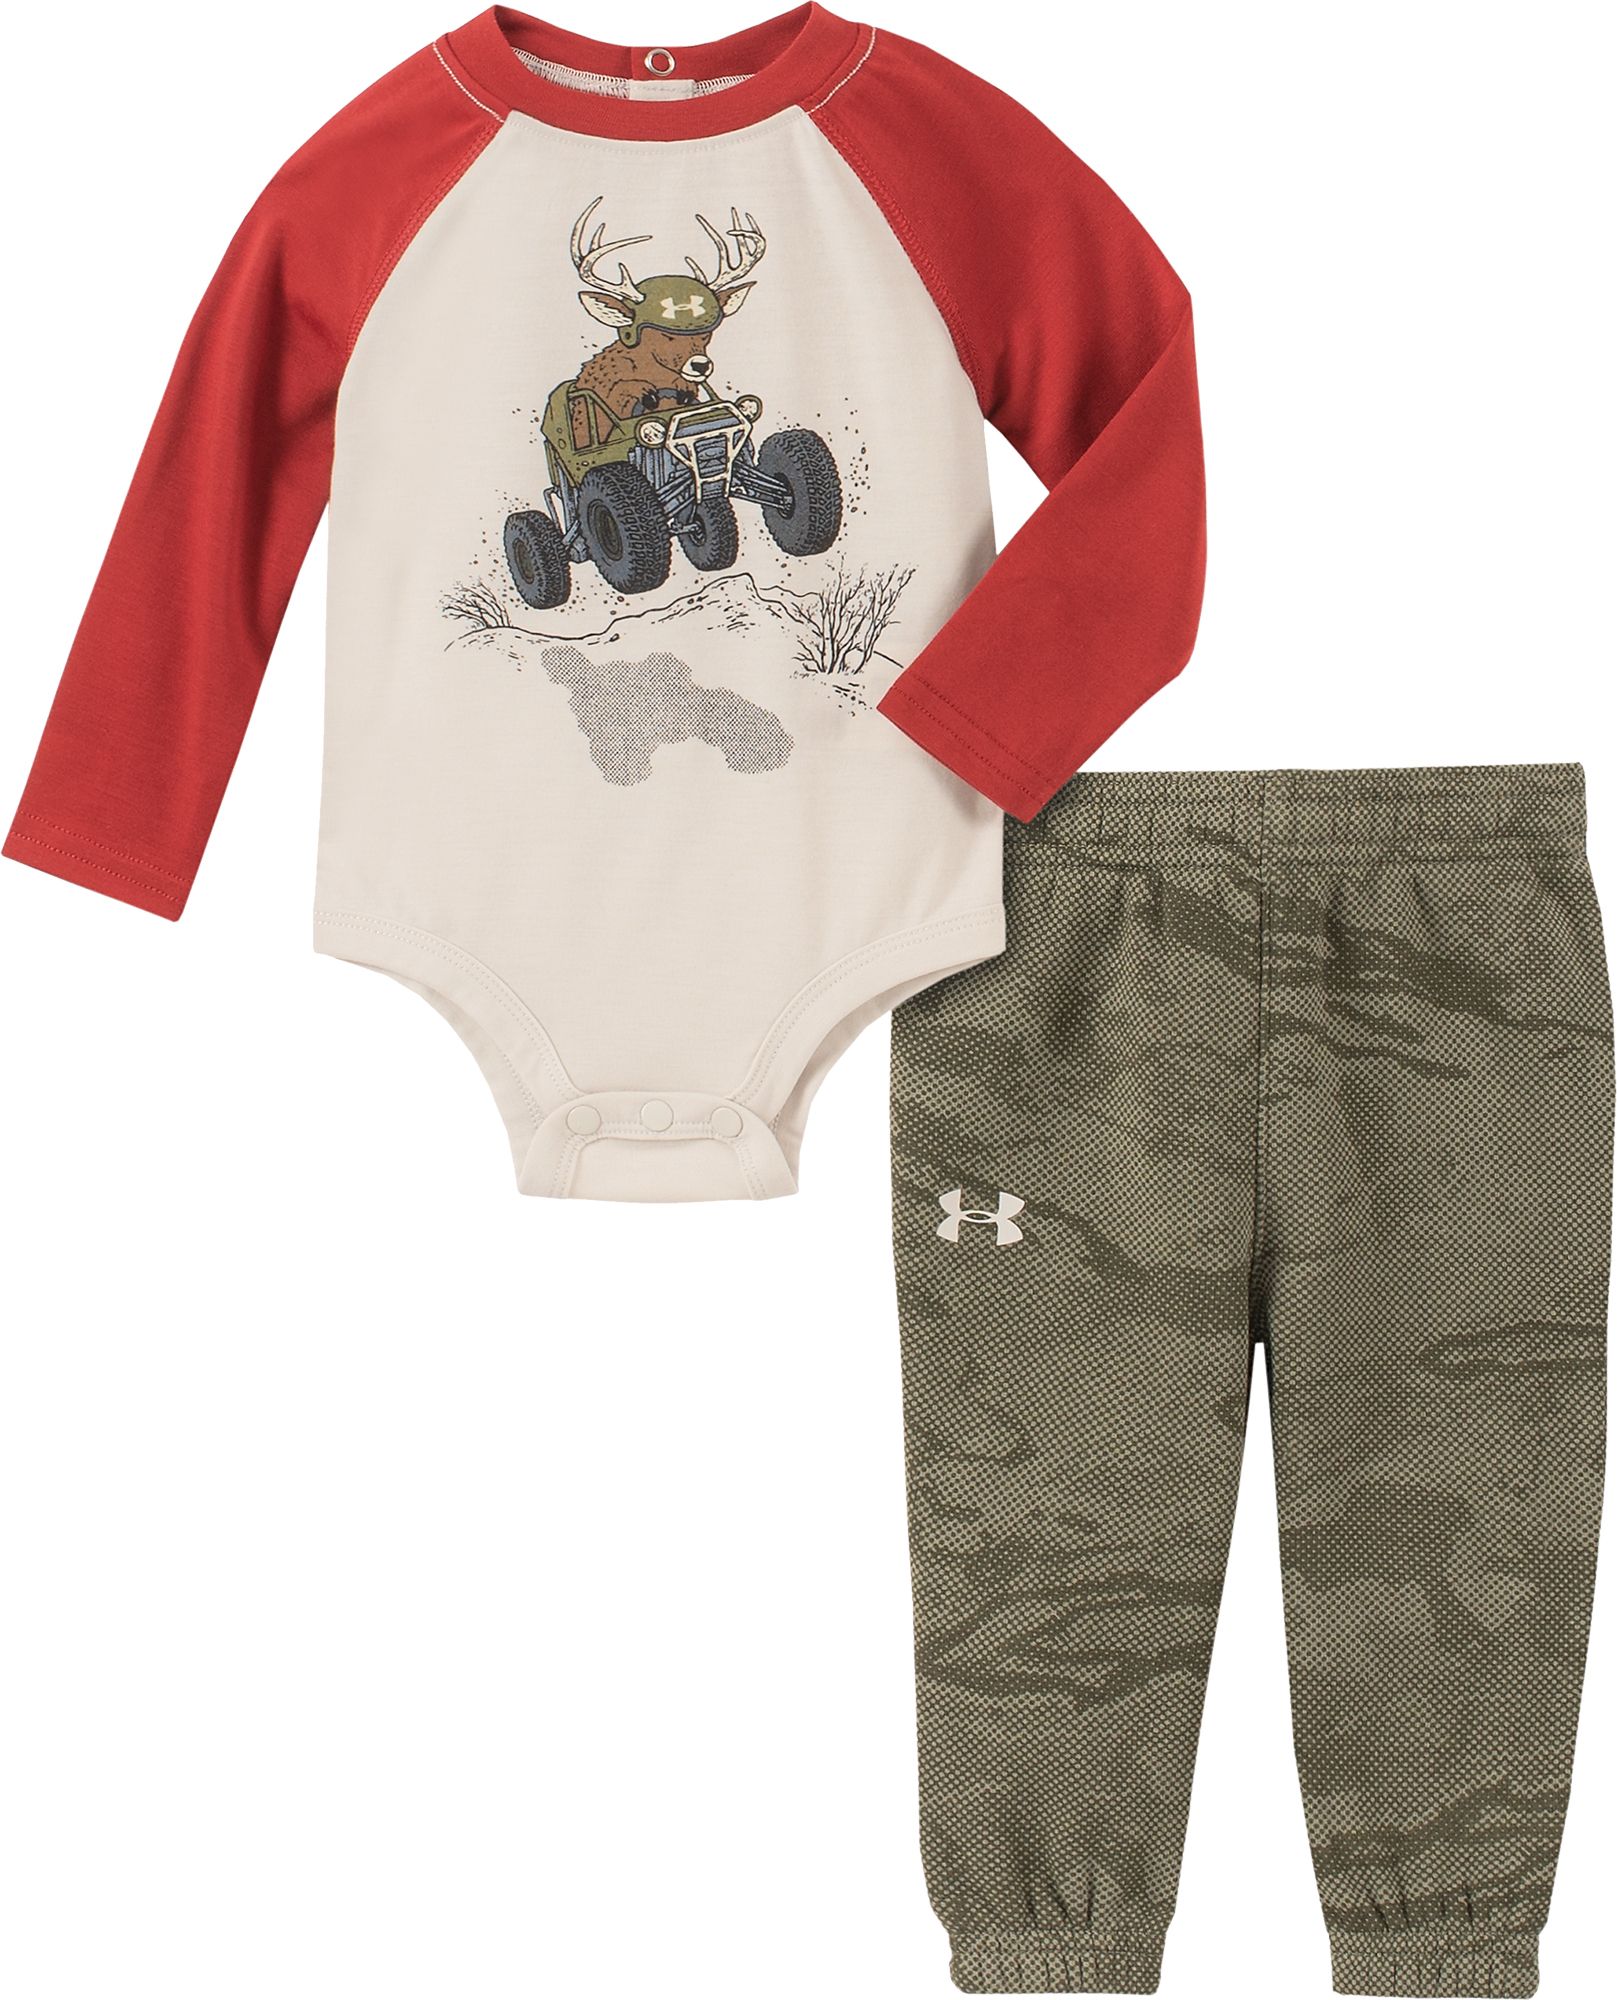 under armour infant boy clothes